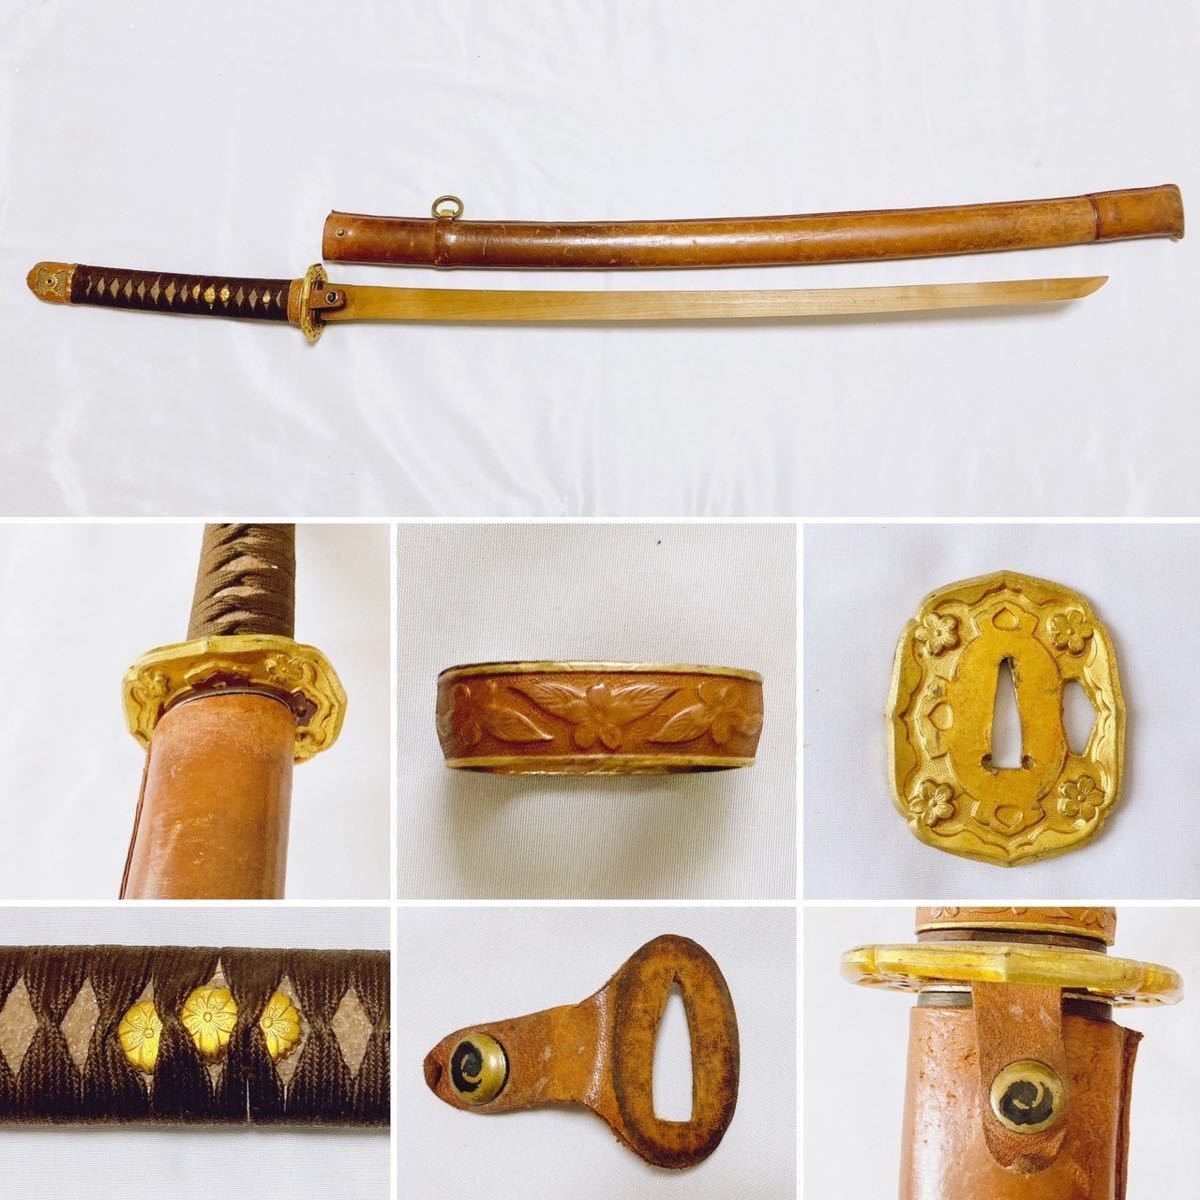 軍刀 九八式 略式外装 ツナギ付属 大日本帝国 刀剣 ミリタリー 武具